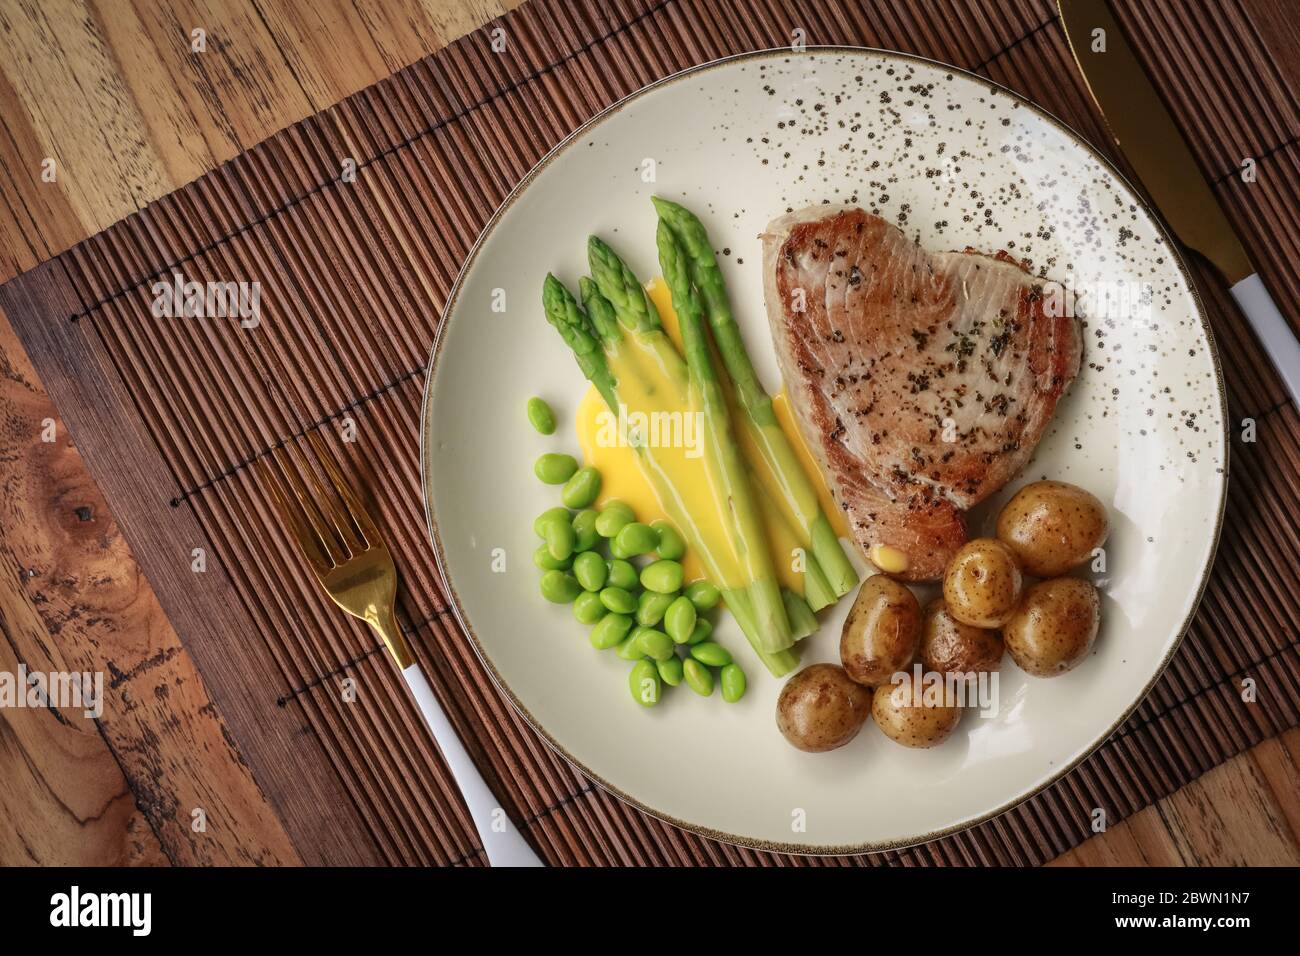 Gegrilltes Thunfischsteak mit Spargel, gebratenen Babykartoffeln, Edamamebohnen und Sauce Hollandaise auf einem Teller, Draufsicht Stockfoto